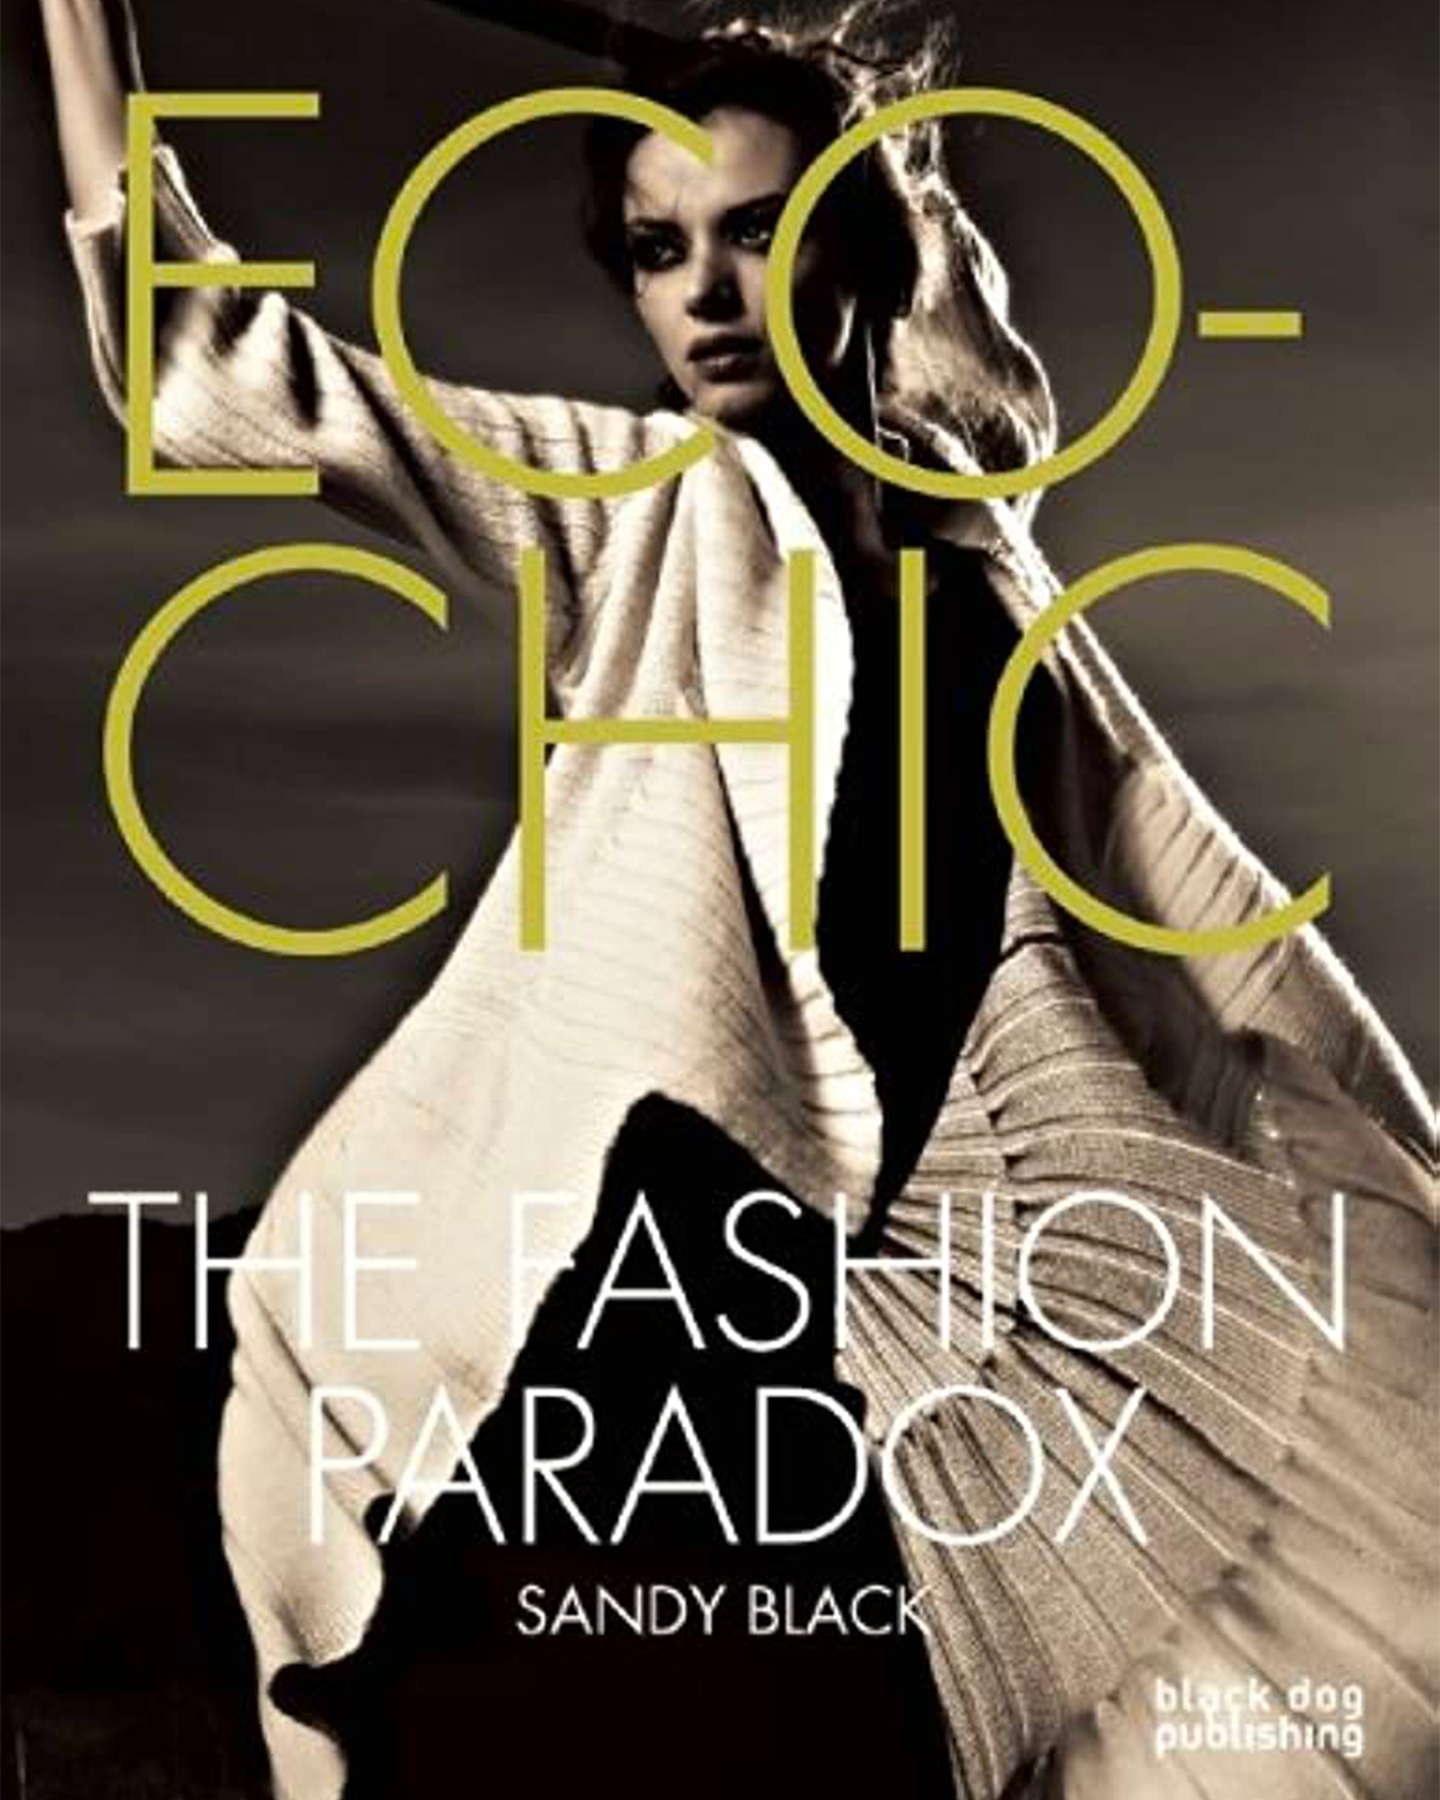 Black, S. (2008) Eco-chic: the fashion paradox. London: Black Dog Publishing